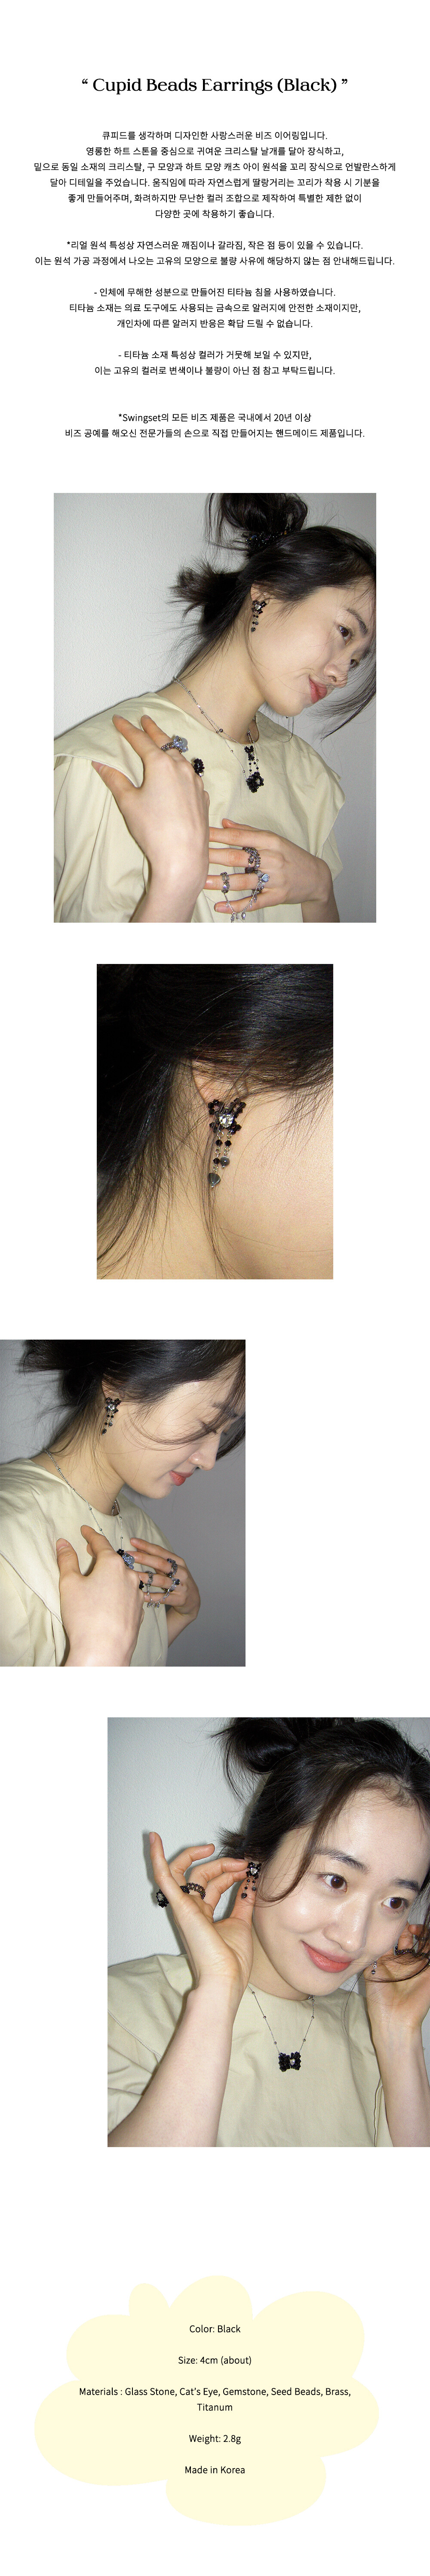 Cupid Beads Earrings (Black)